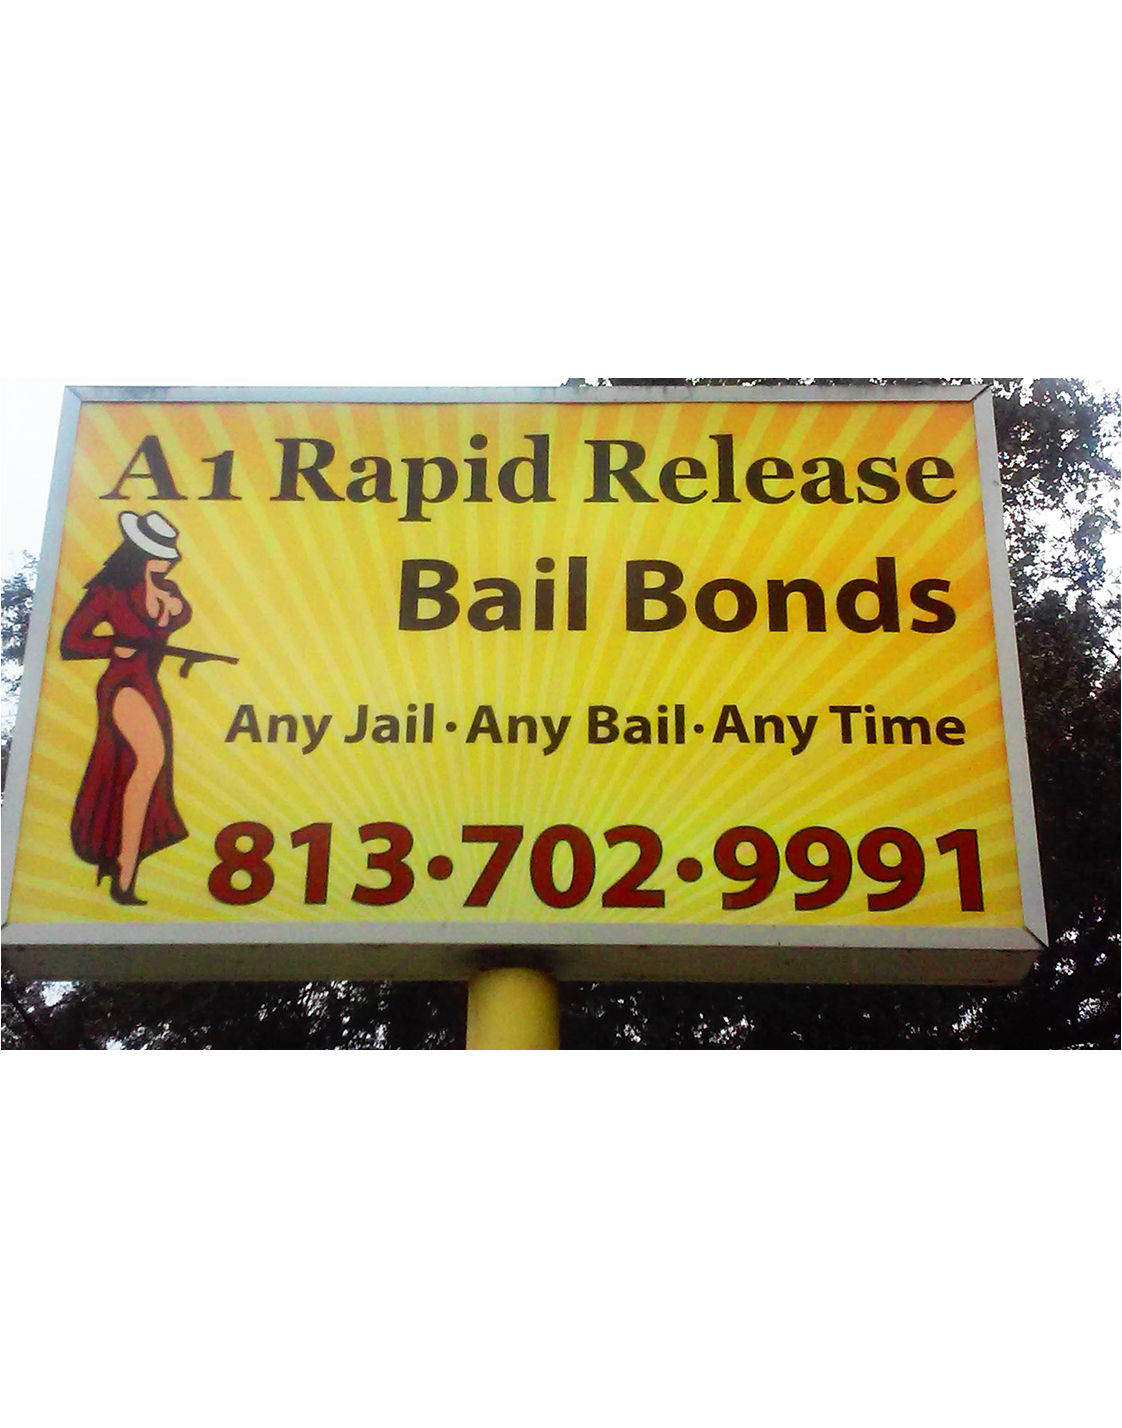 A1 Rapid Release Bail Bonds Art on Billboard